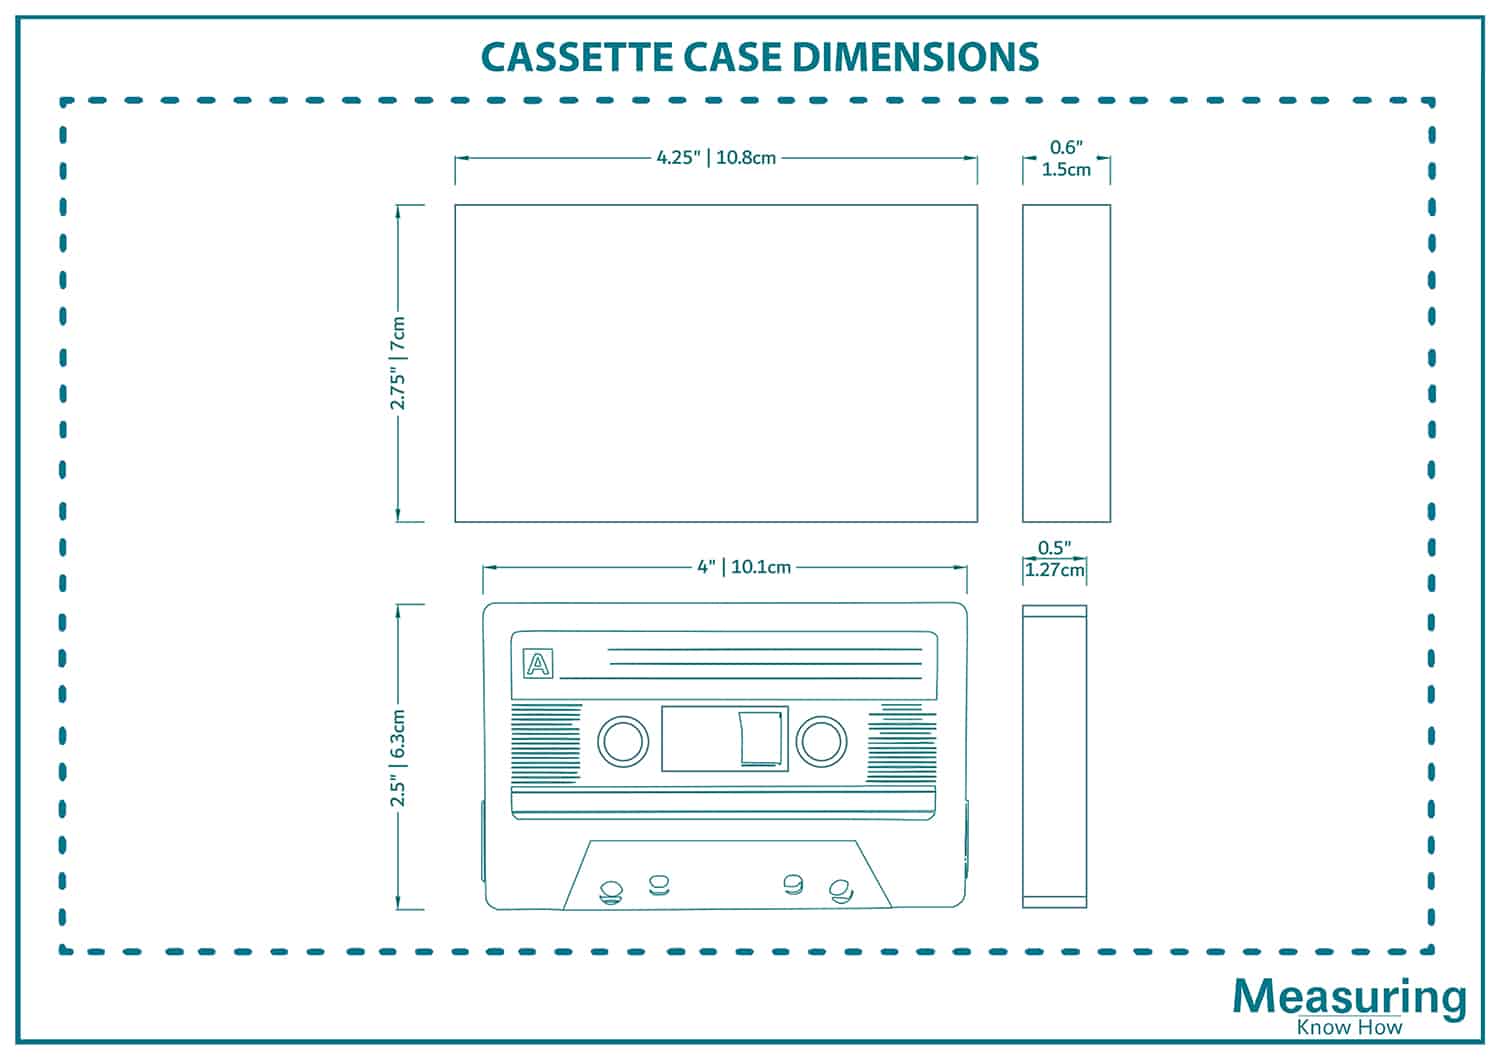 Cassette case dimensions